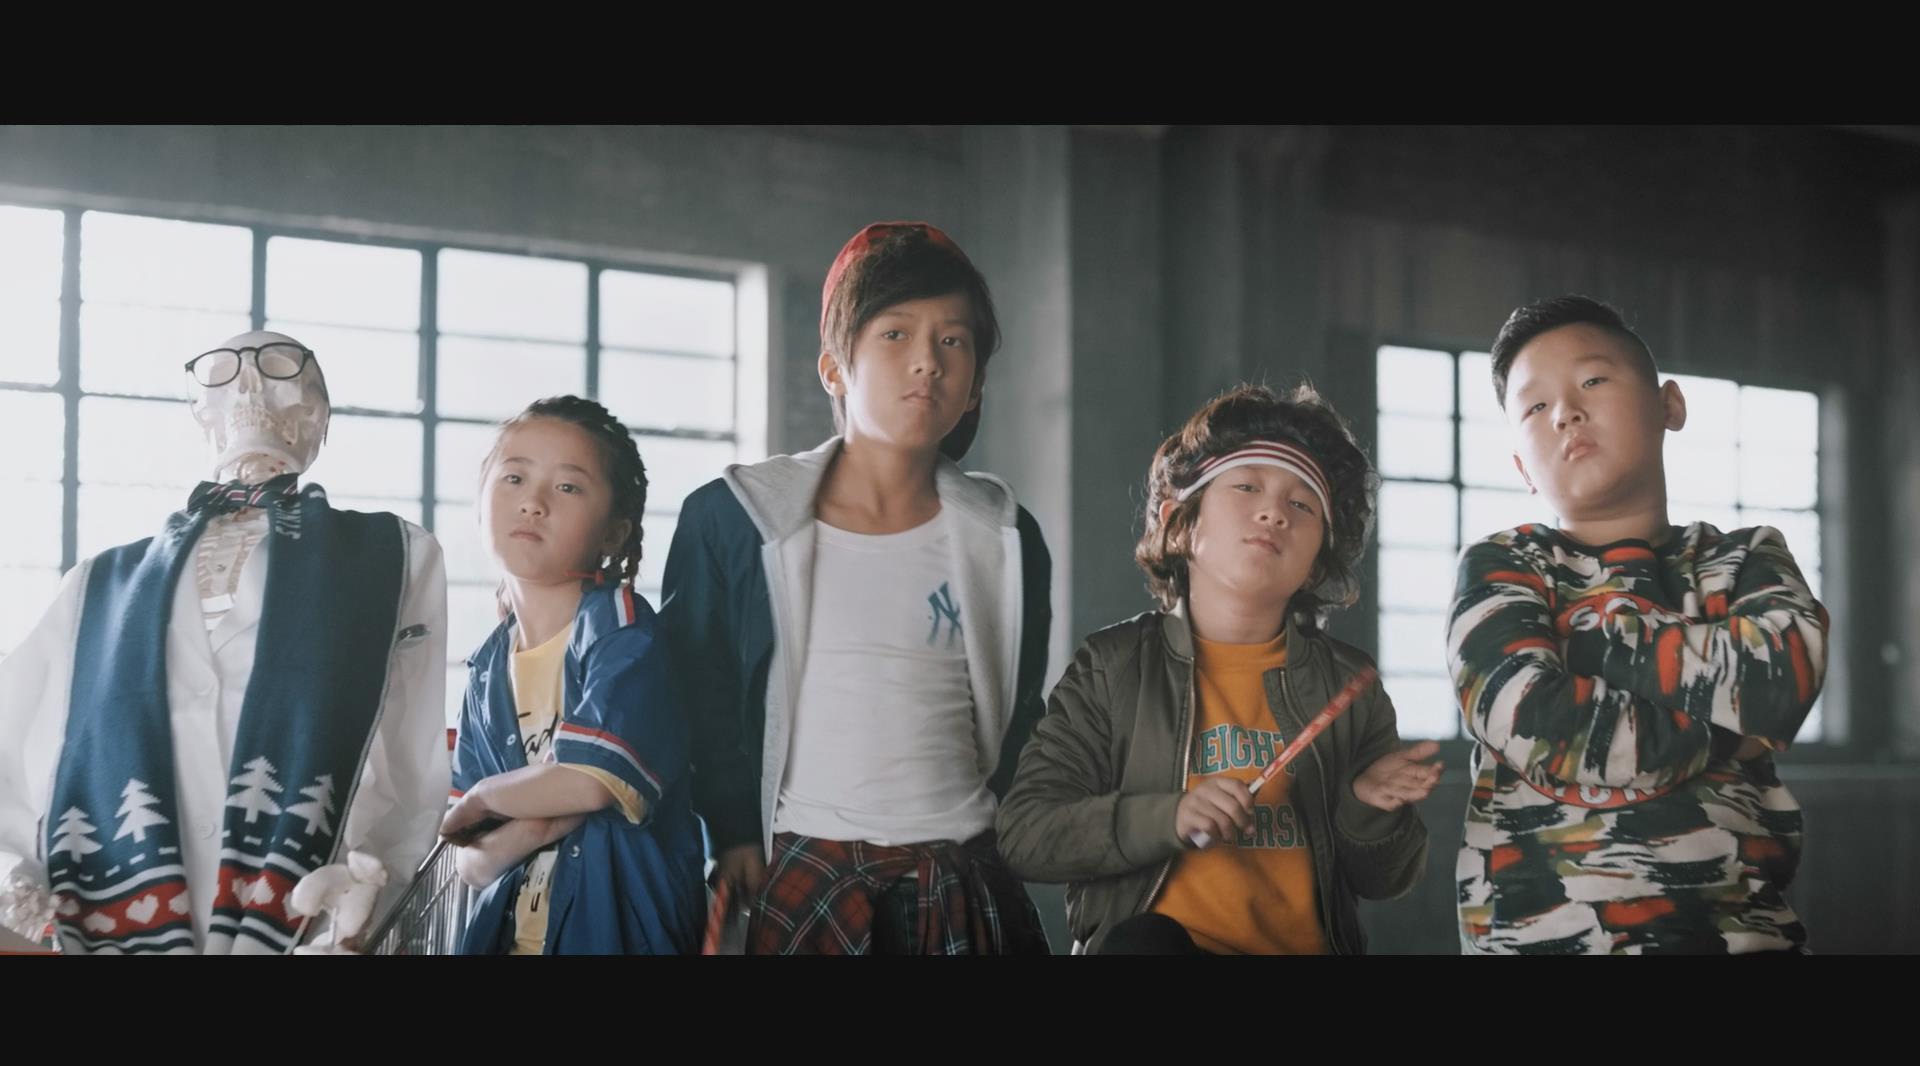 科颜氏kiehl's 广告（导演版）花式乒乓球挑战世界冠军马龙